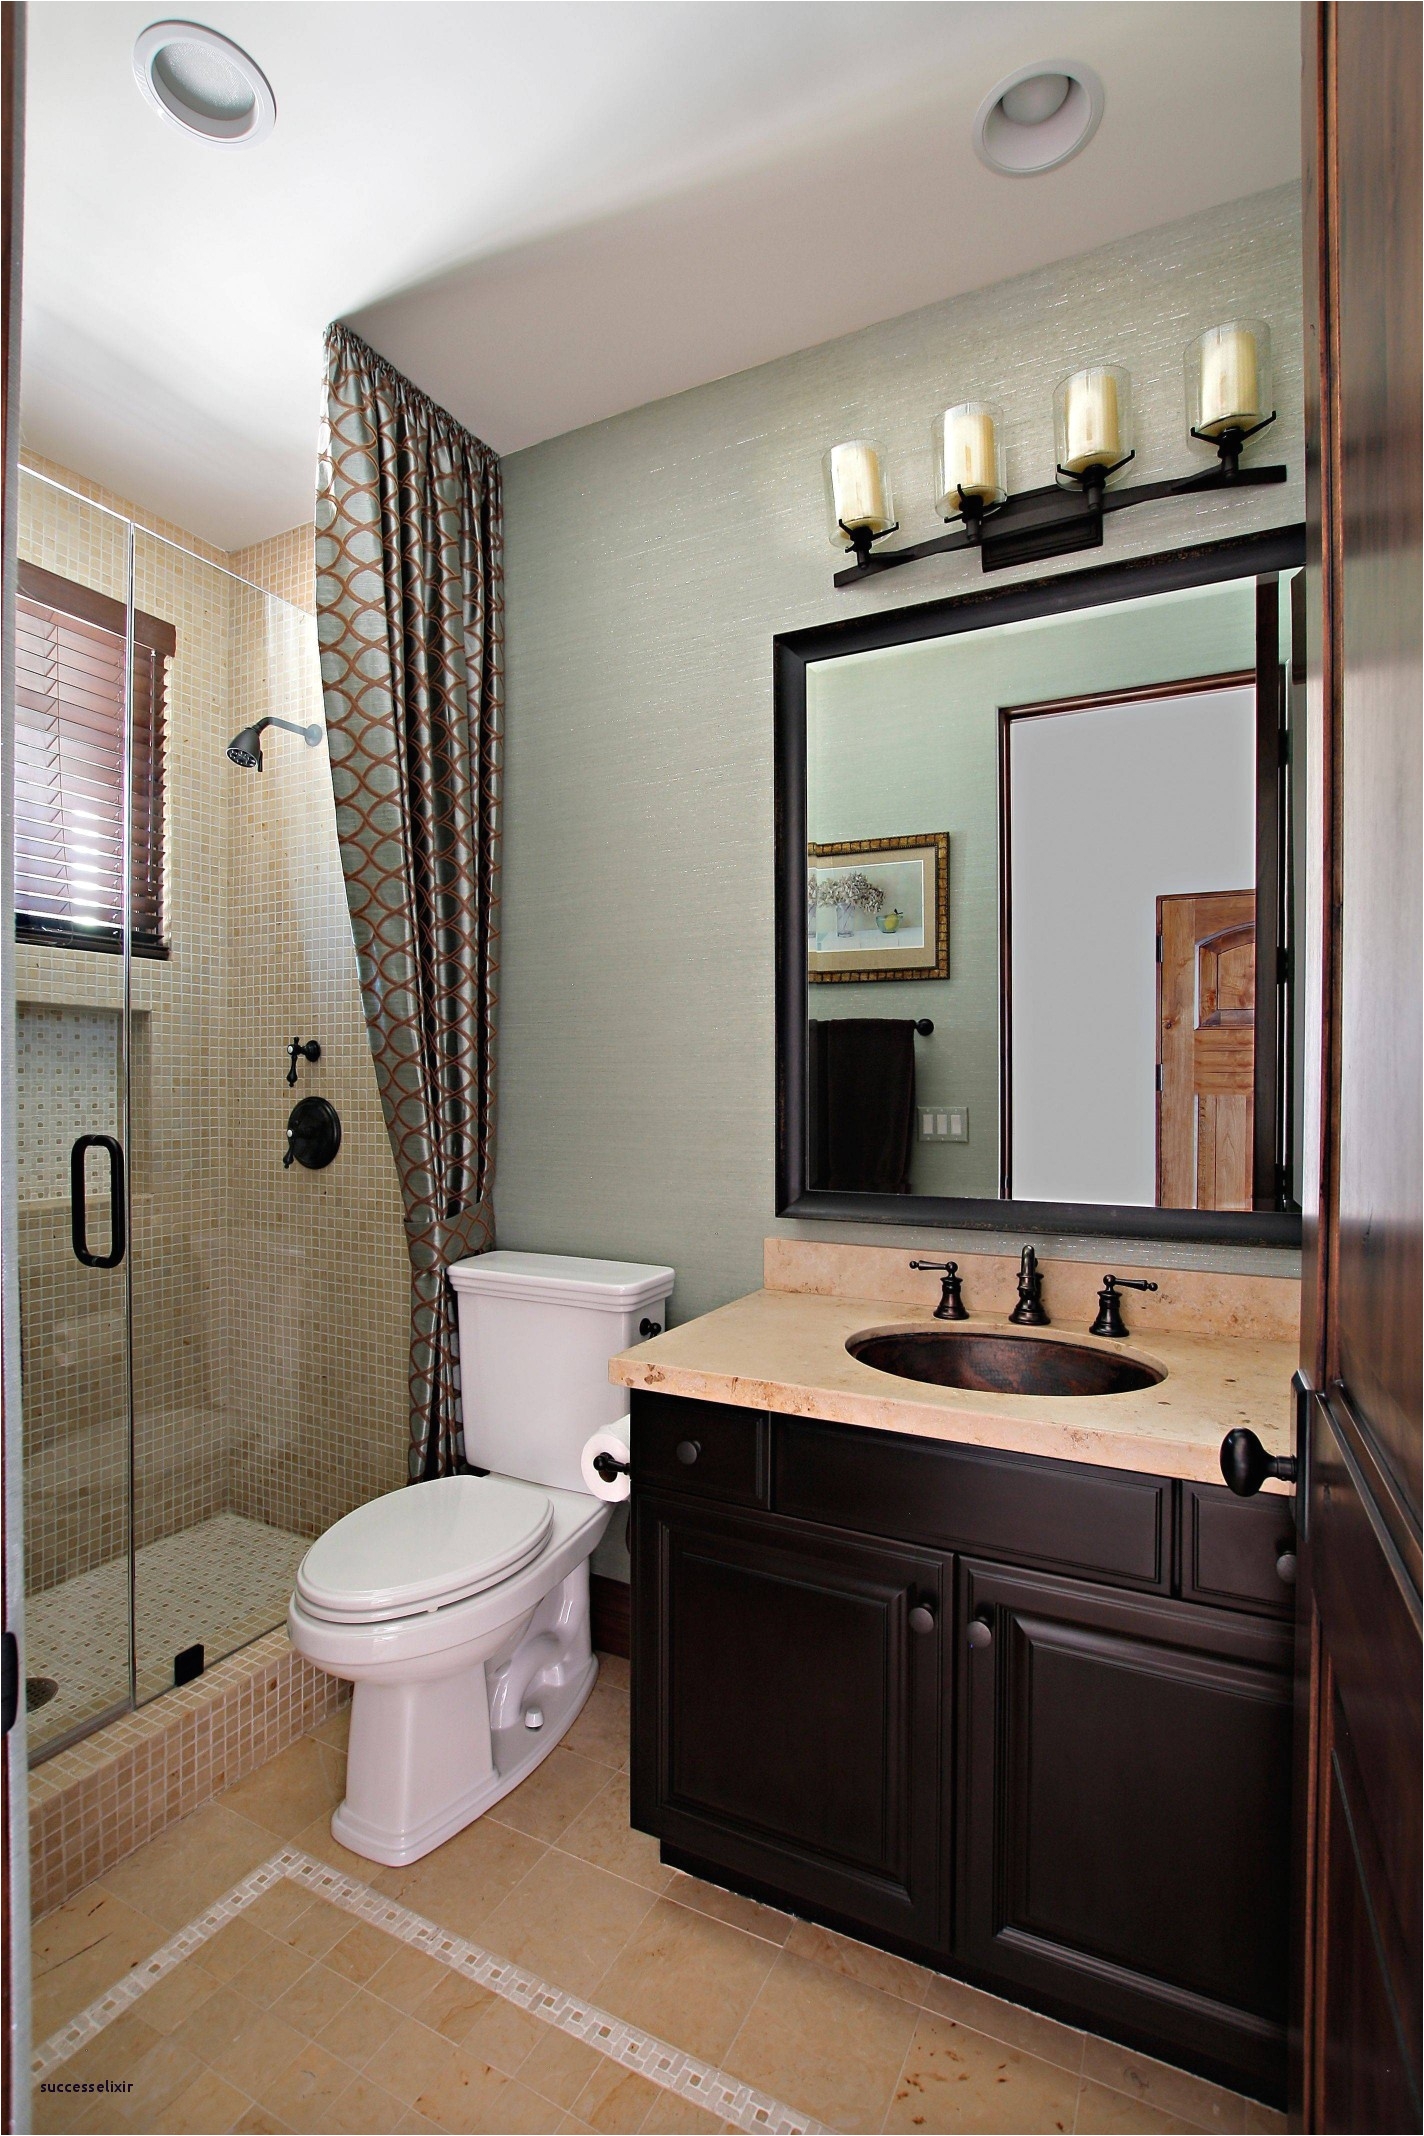 tub to shower fresh tub shower ideas for small bathrooms i pinimg originals 8e 04 0d